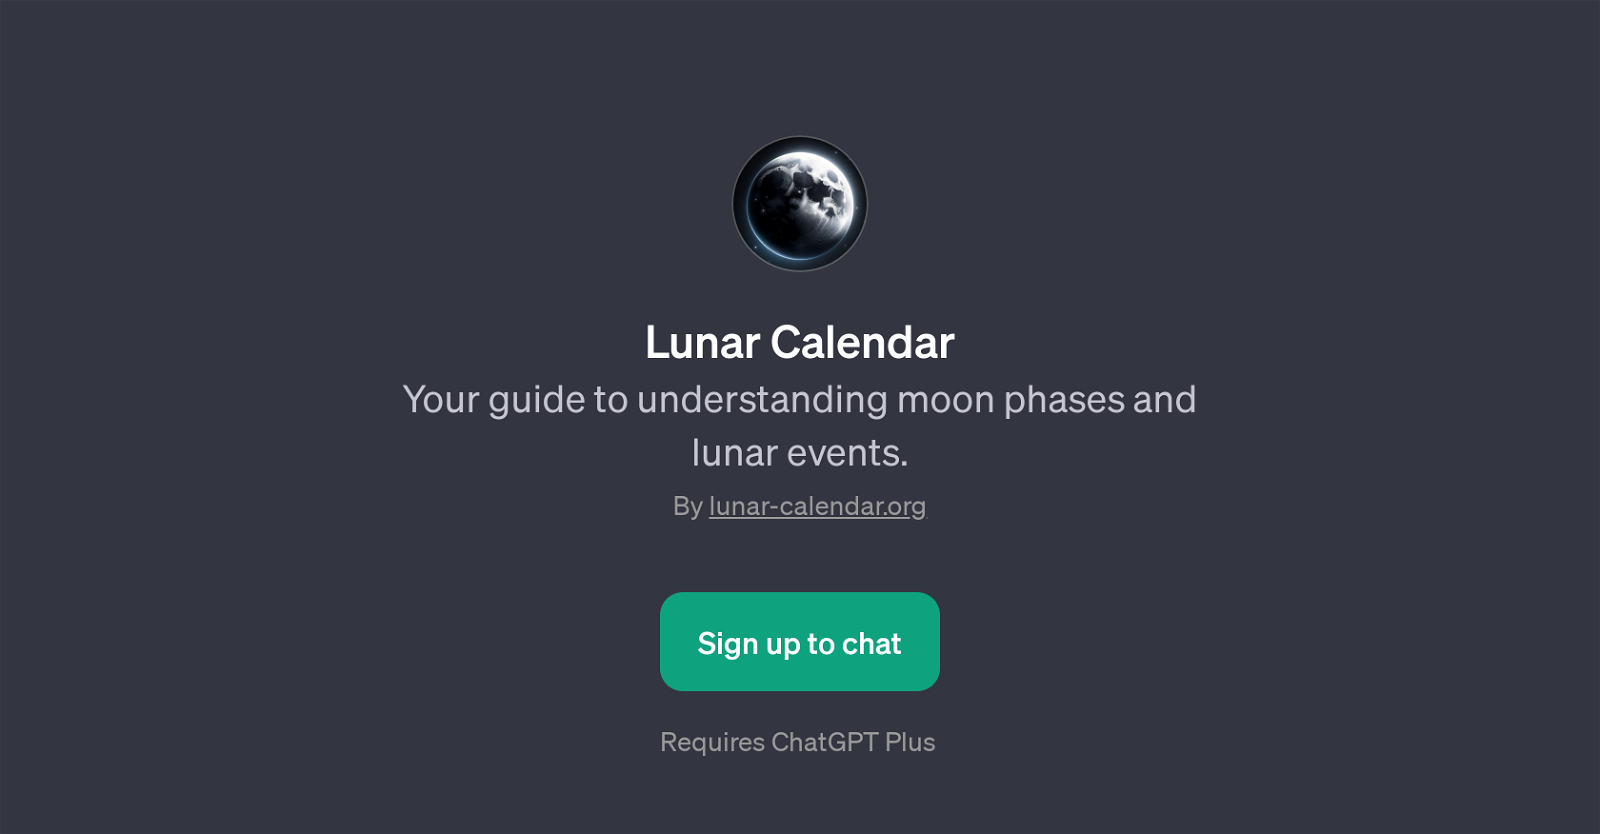 Lunar Calendar website